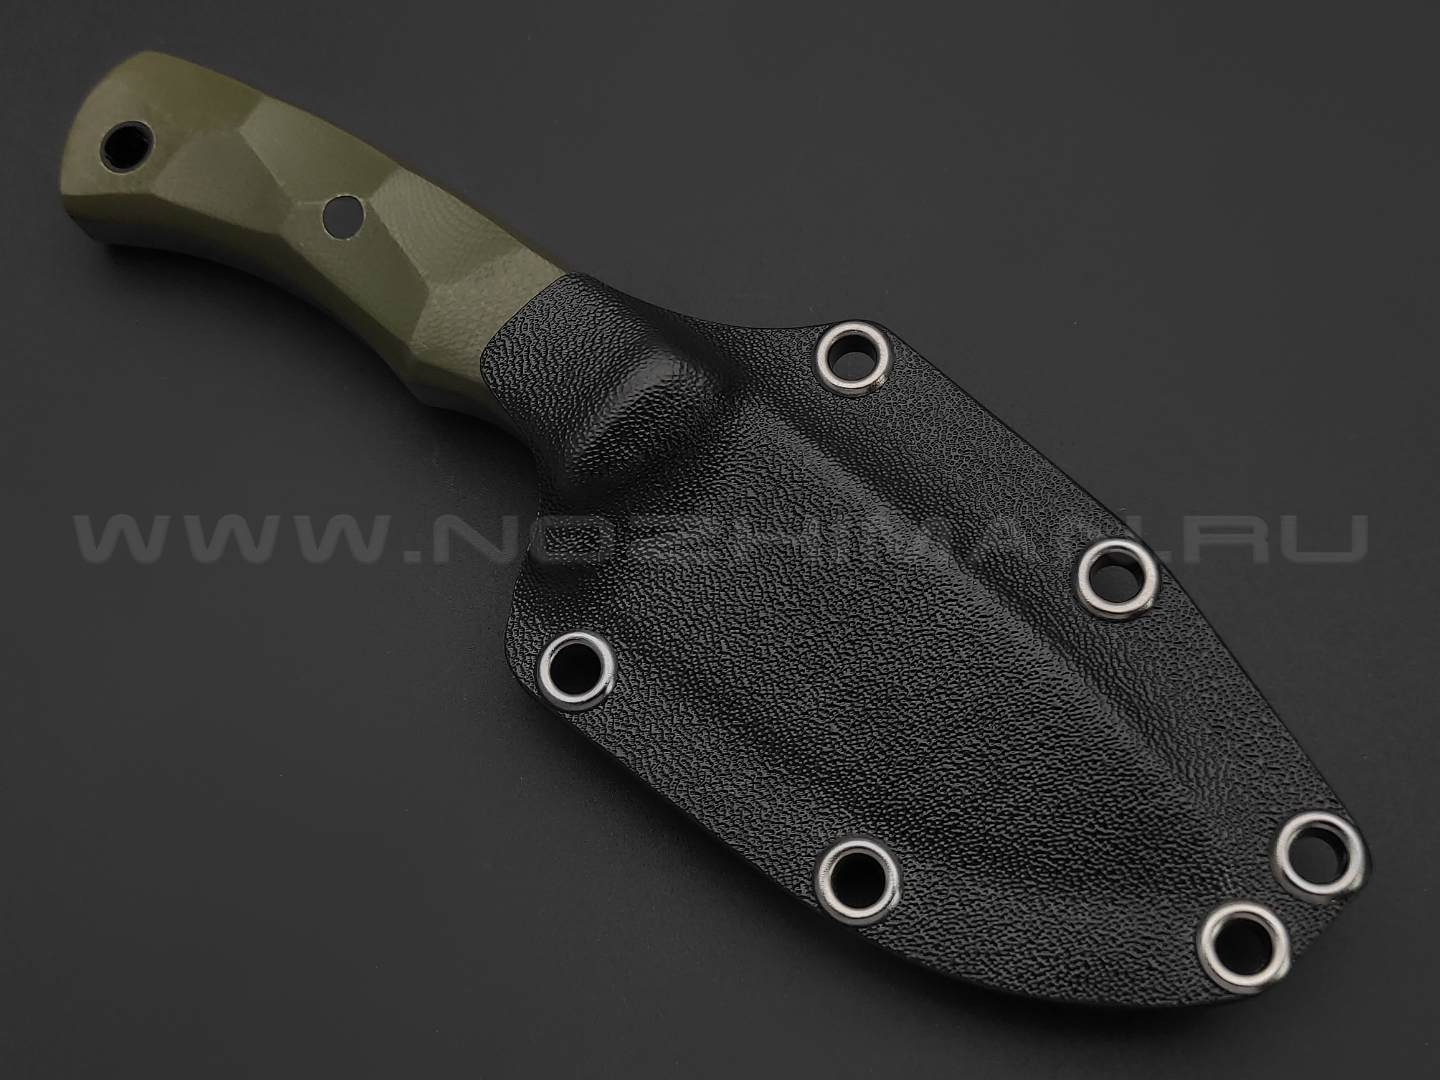 Волчий Век нож Smalltalk сталь 1.4116 Krupp WA satin, рукоять G10 od green